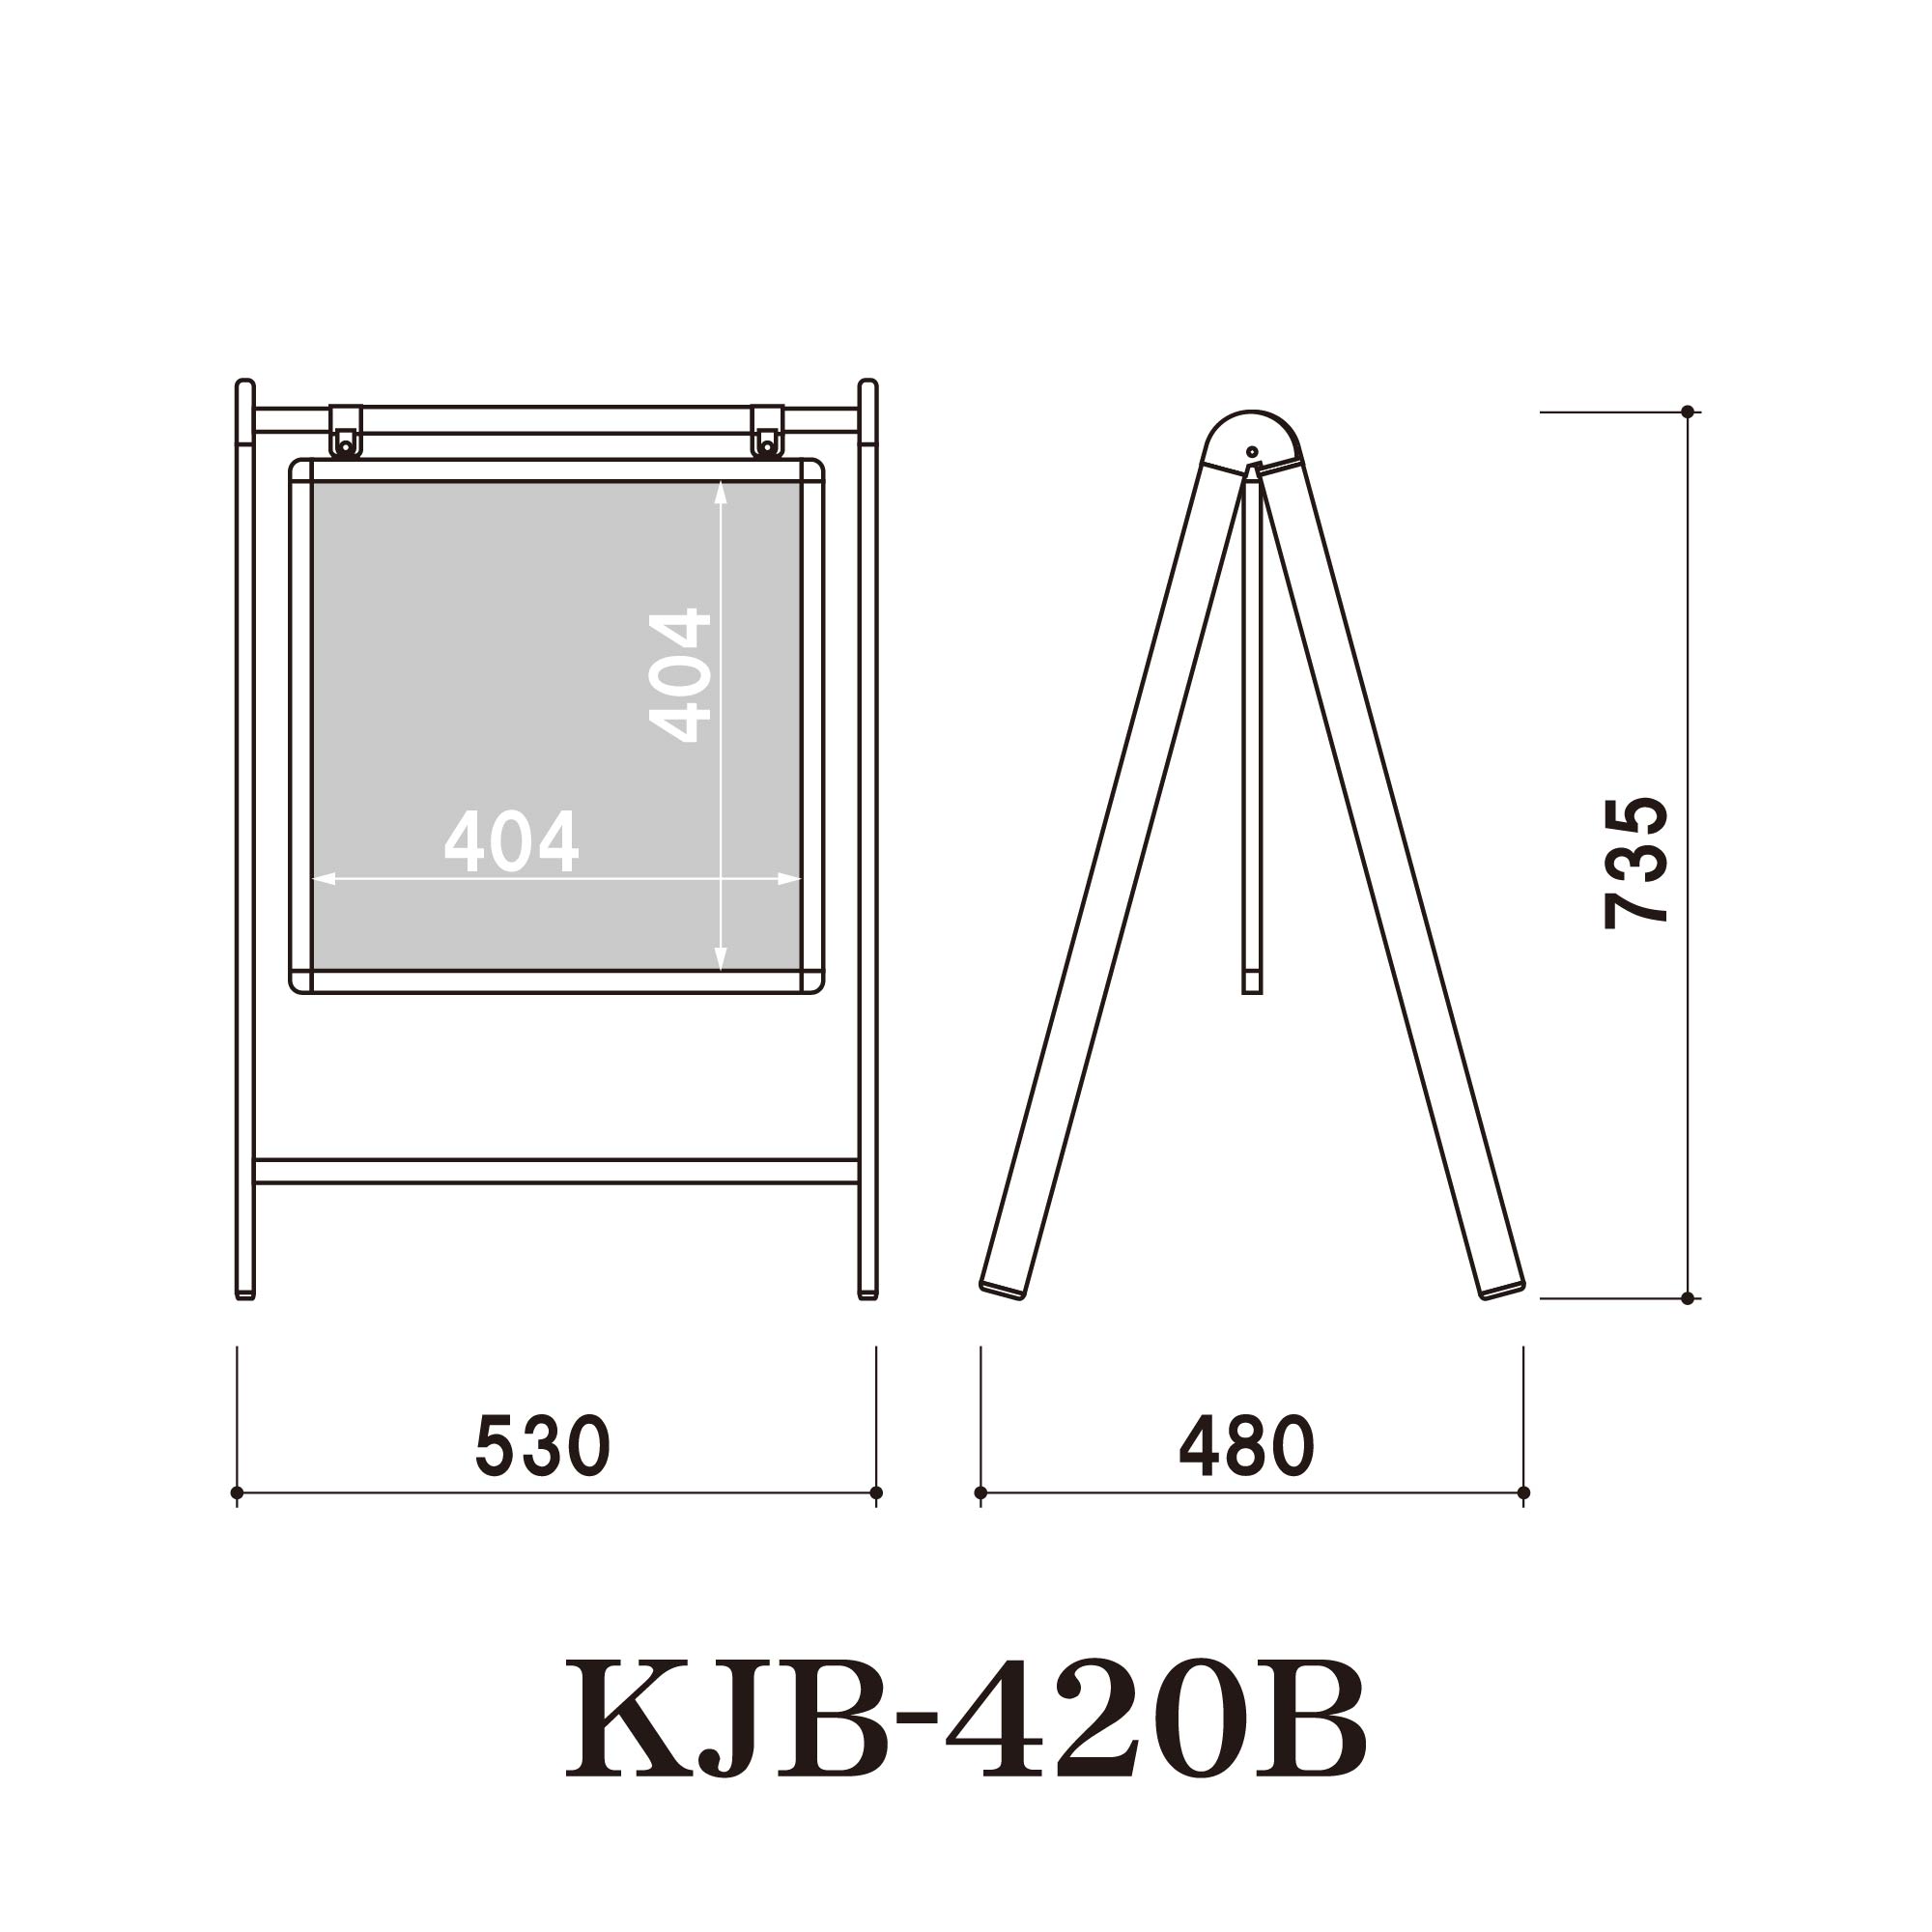 ブラックボードサイン KJB-420B (KJB-420B) スタンド看板・立て看板 折りたたみ,おしゃれ,かわいい,チョーク,店頭,ウェルカム ボード,メニュー黒板,磁石,マグネット 看板の激安通販ならサインウェブ